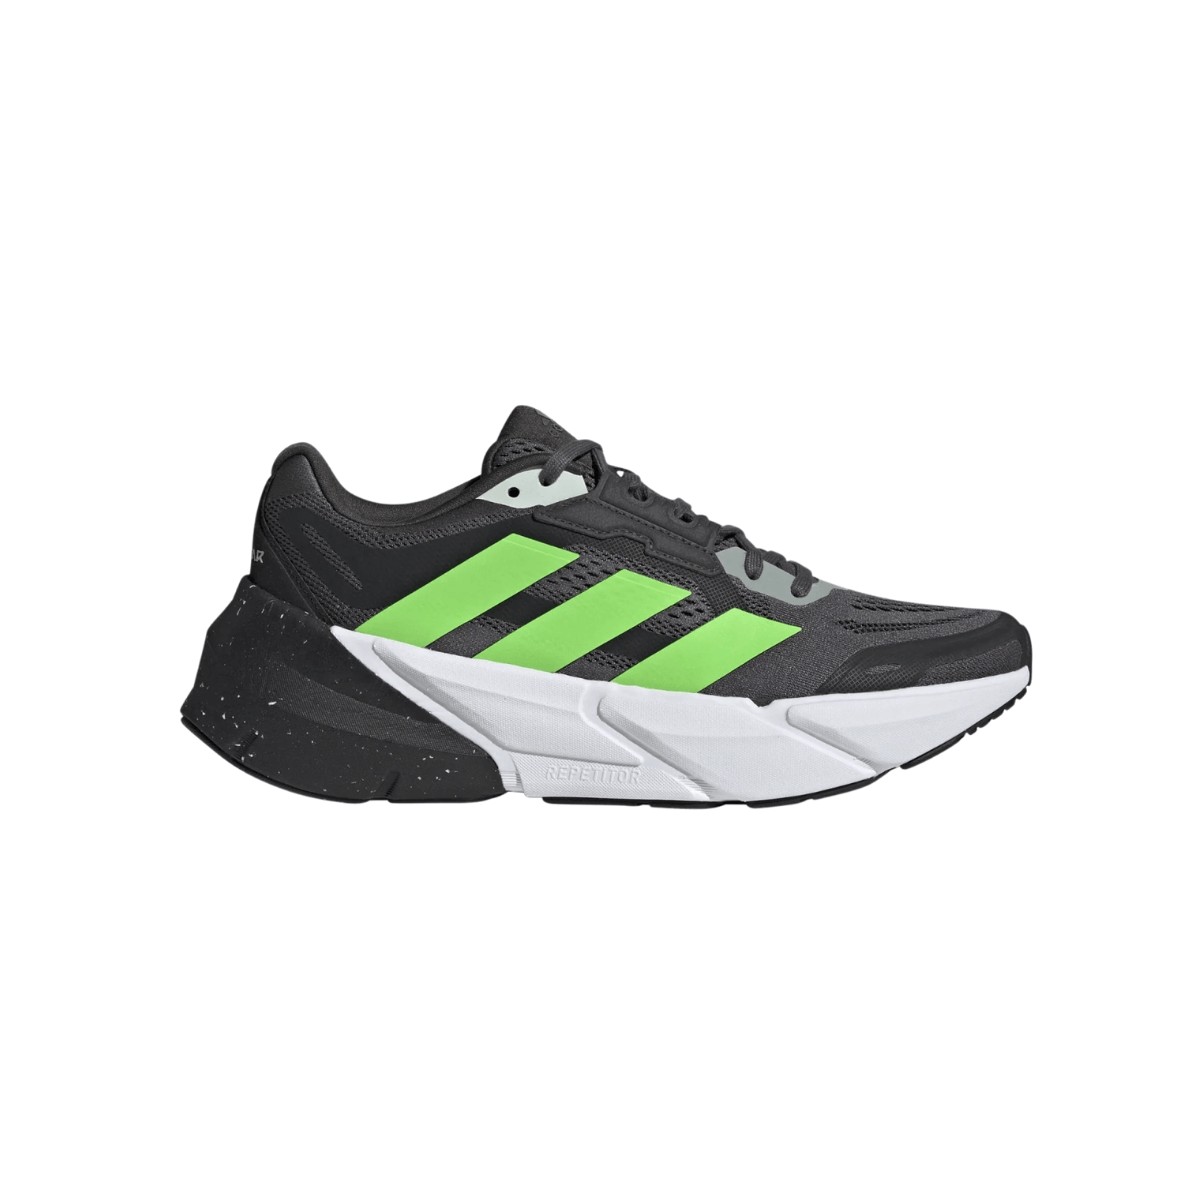 Chaussures Adidas Adistar 1 Noir Vert AW22, Taille UK 7.5